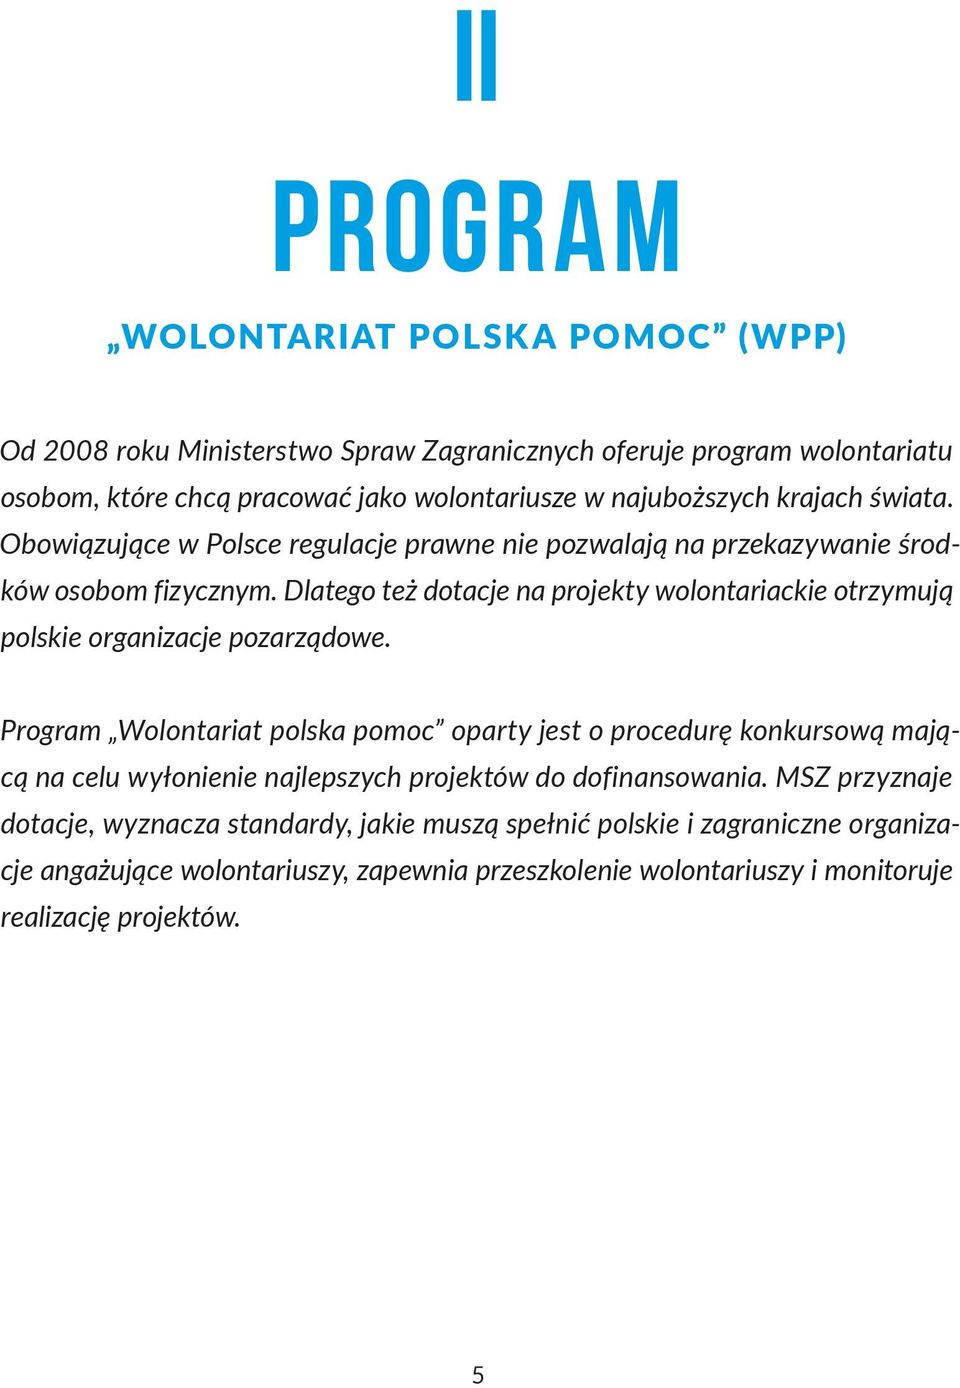 Dlatego też dotacje na projekty wolontariackie otrzymują polskie organizacje pozarządowe.